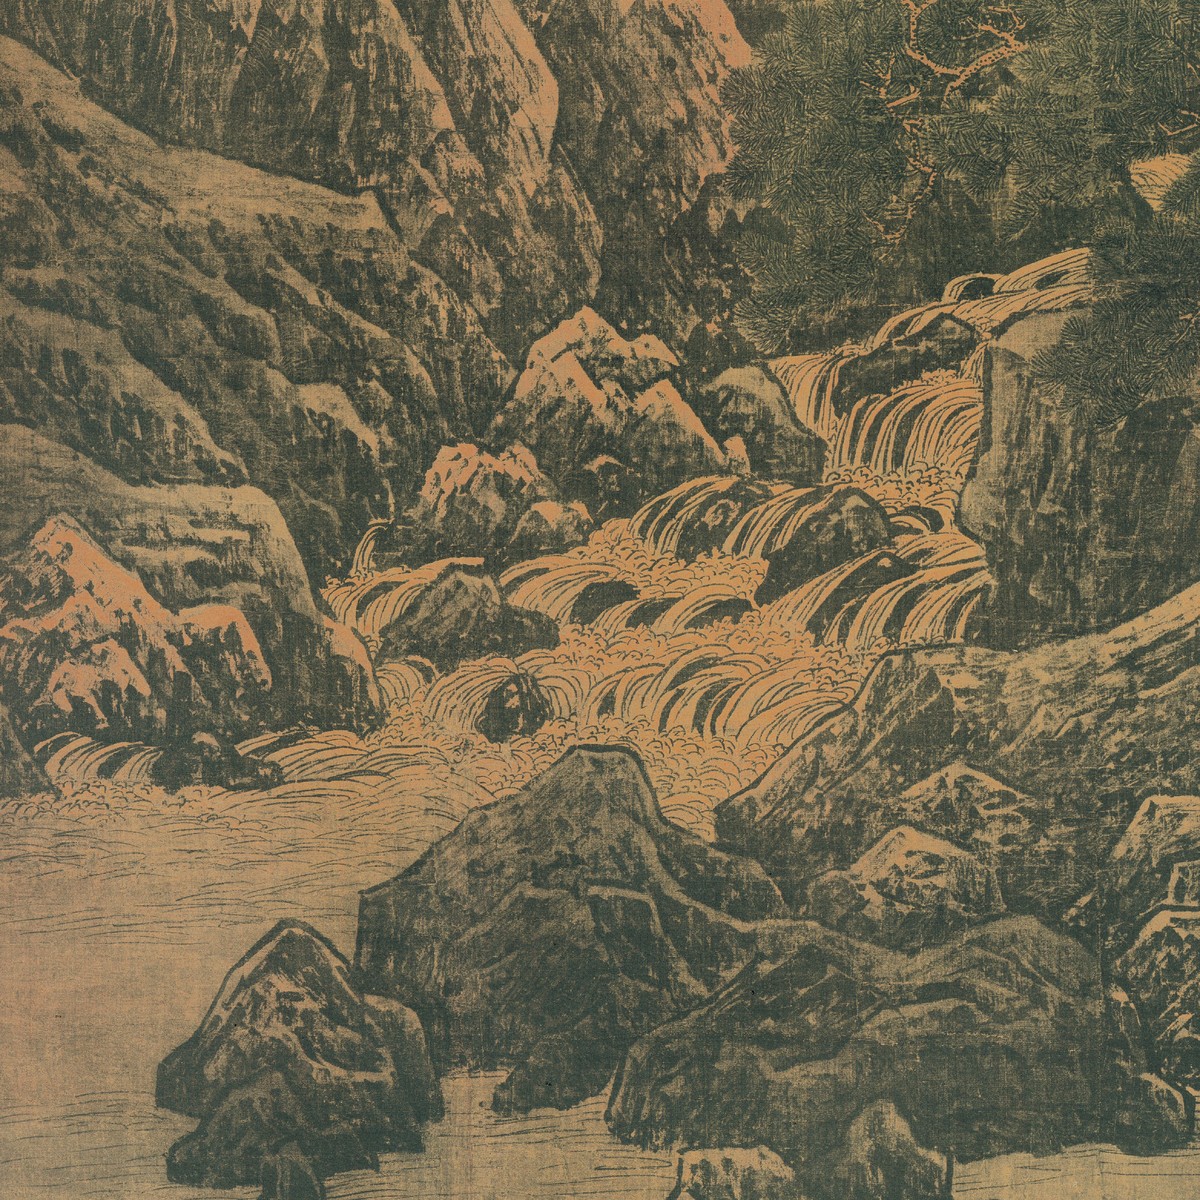 万壑松风图（局部）    宋  李唐  轴  绢本设色  188.7×139.8cm  台北故宫博物院藏